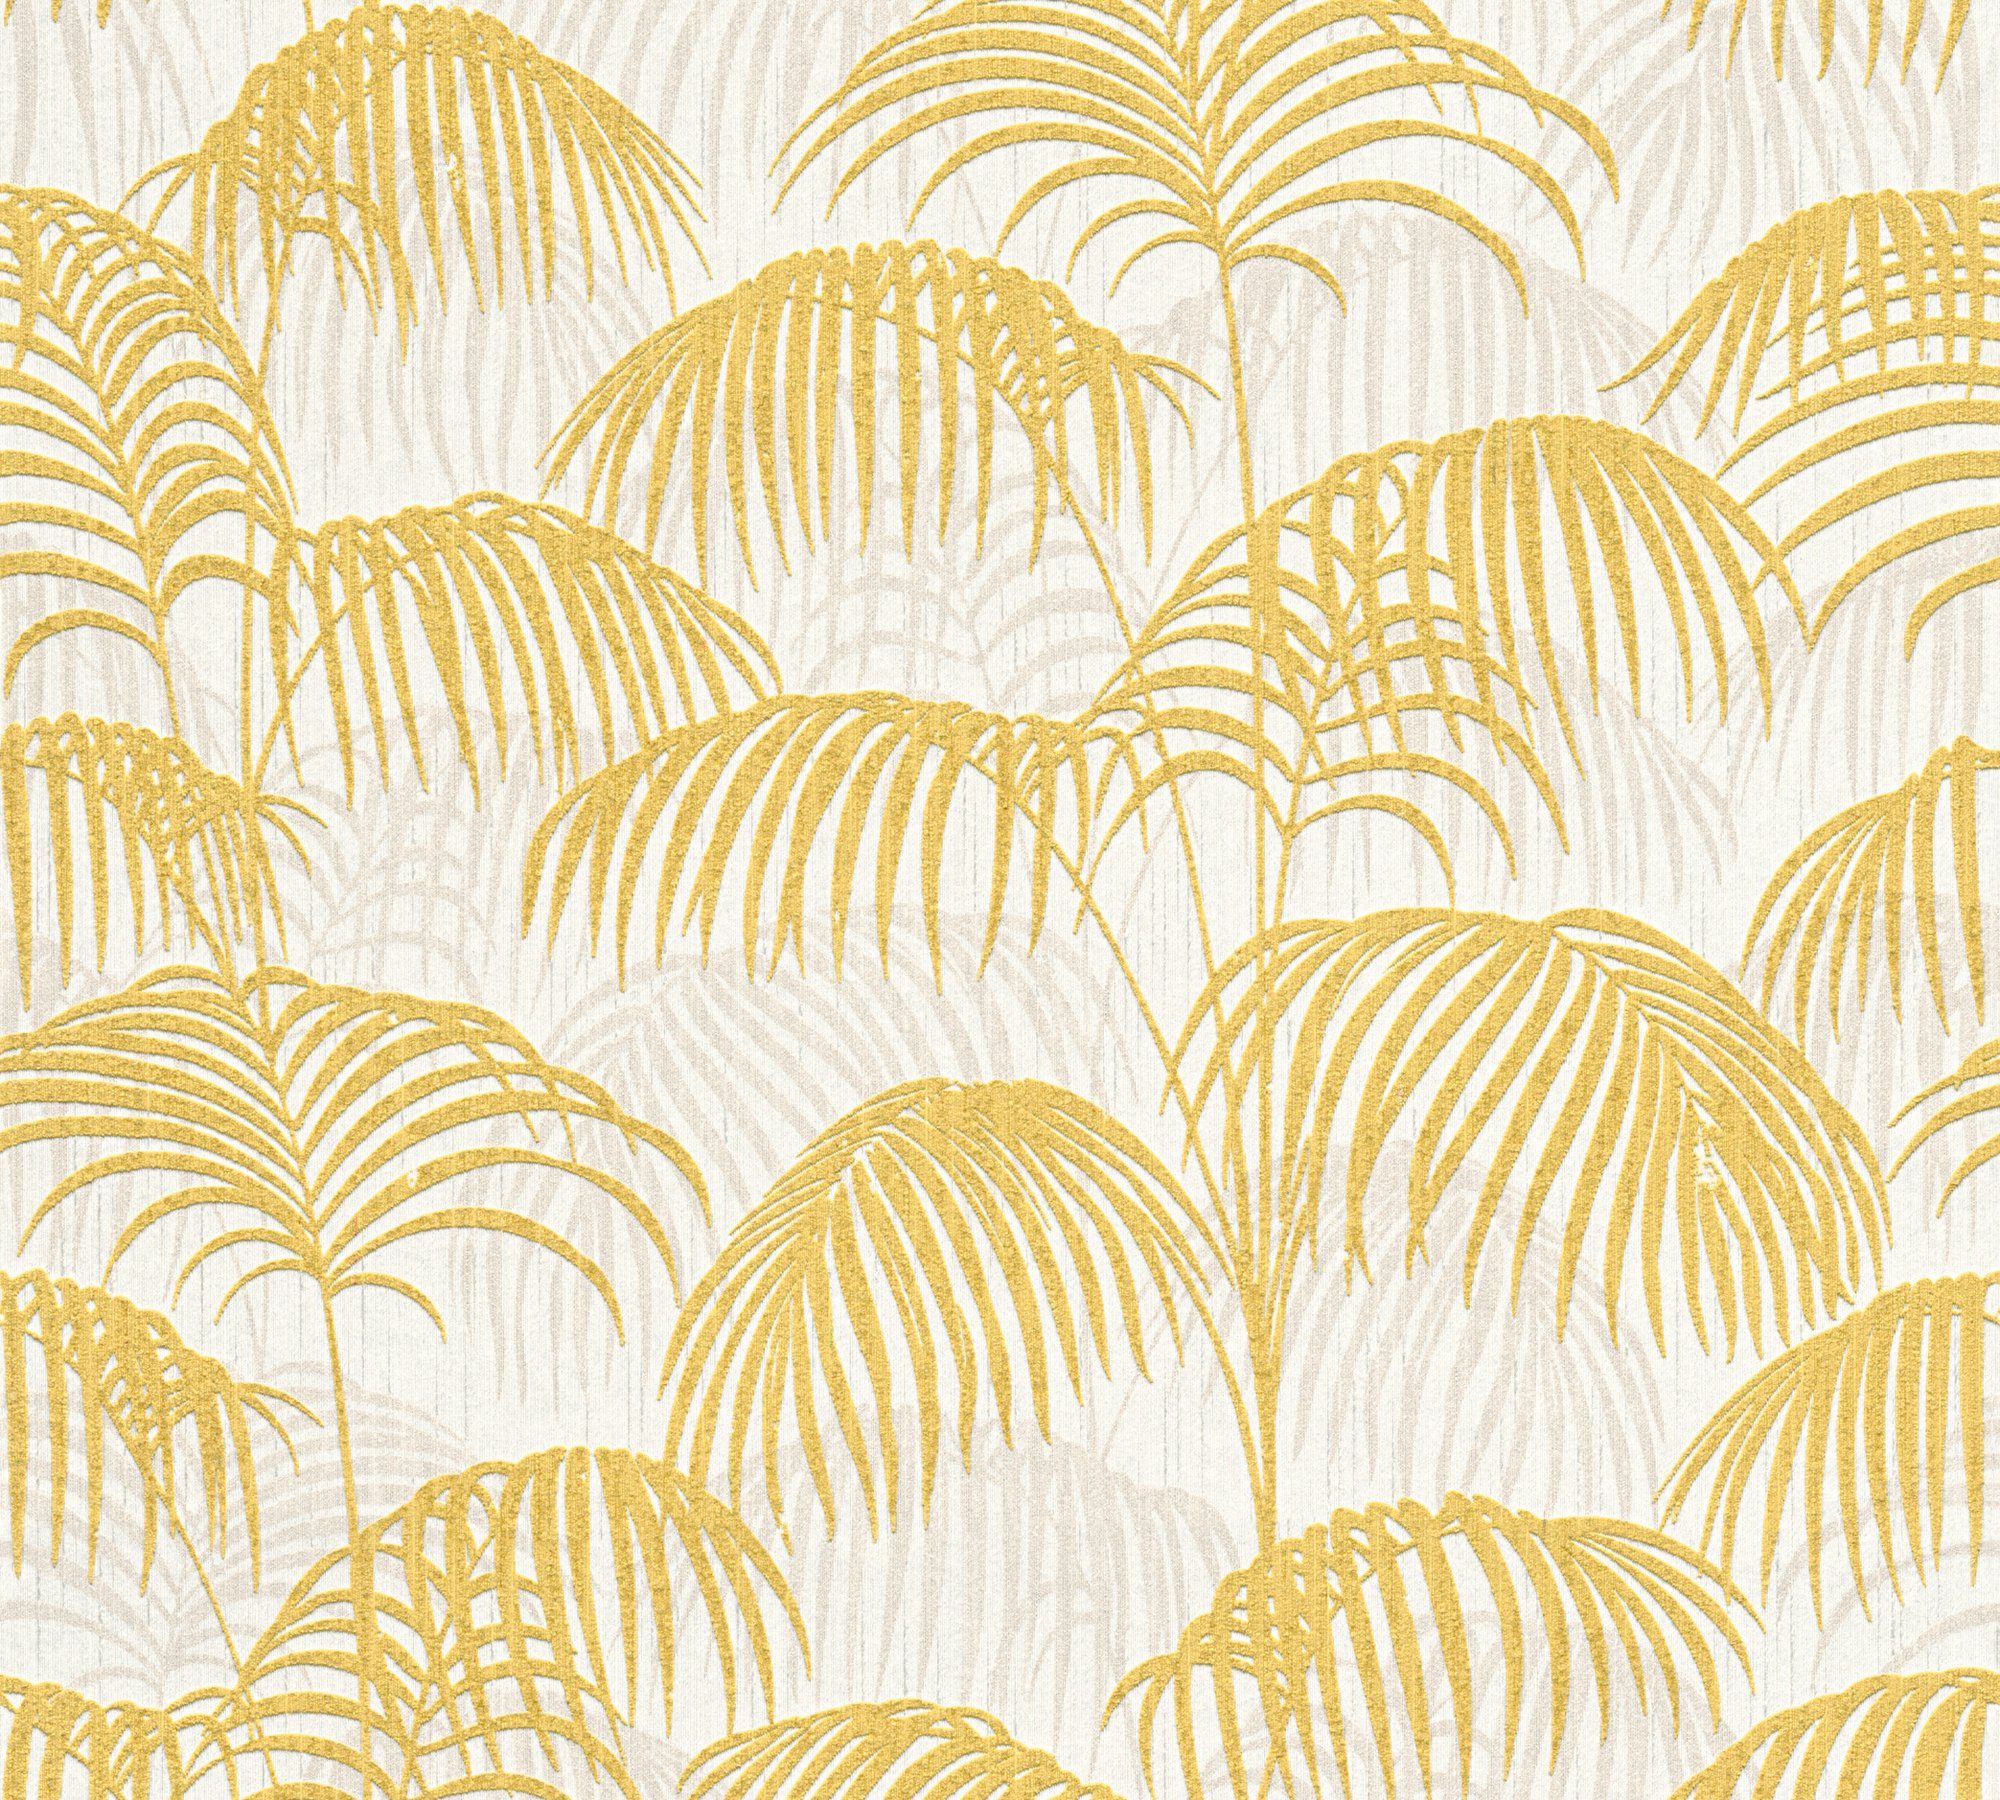 Dschungeltapete floral, Paper Tessuto, samtig, Architects Création gold/gelb/weiß Tapete A.S. Textiltapete botanisch, Palmen